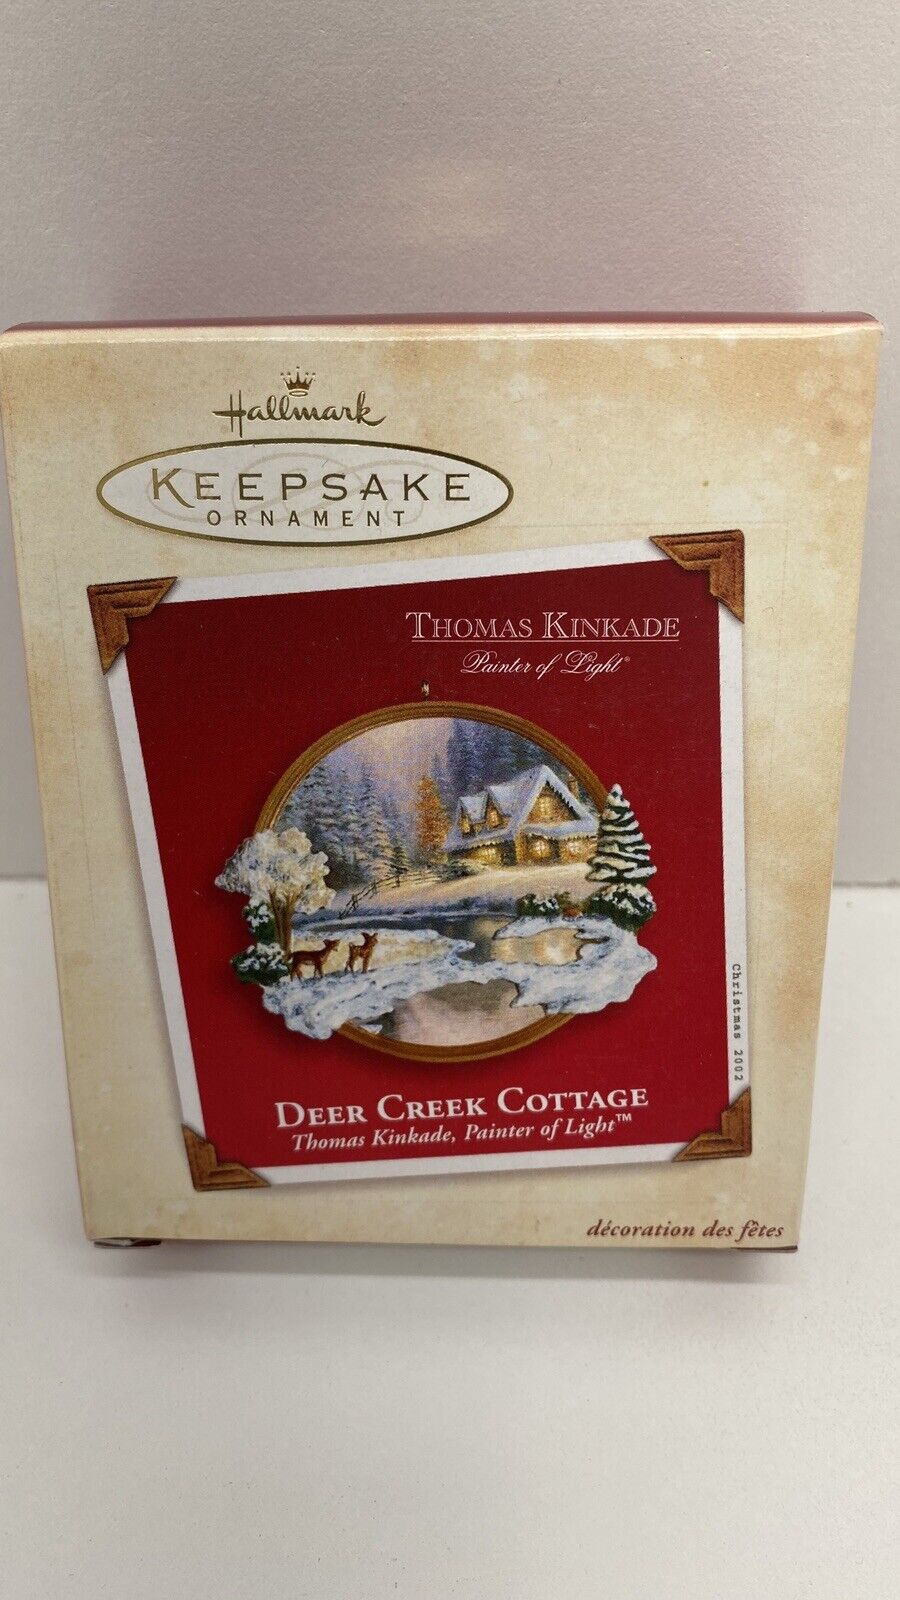 Hallmark Keepsake Thomas Kinkade 2002 Deer Creek Cottage Christmas Ornament